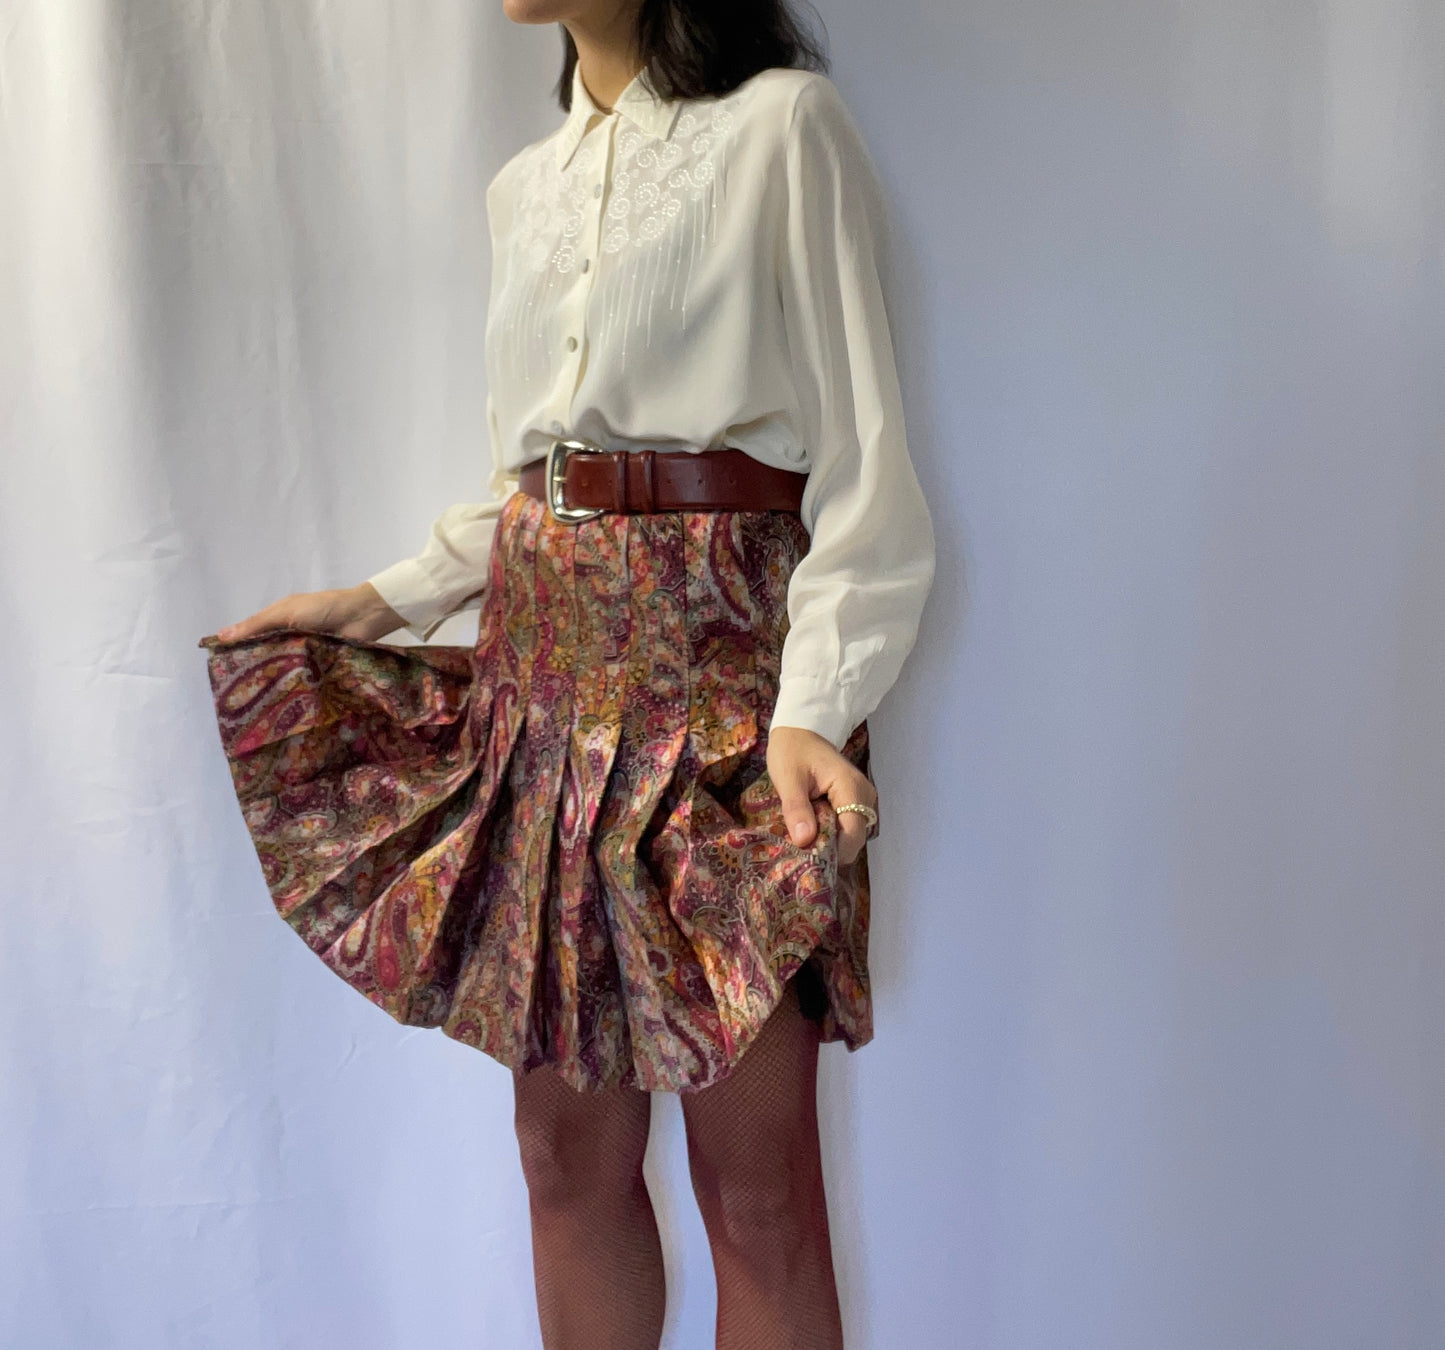 The autumn skirt